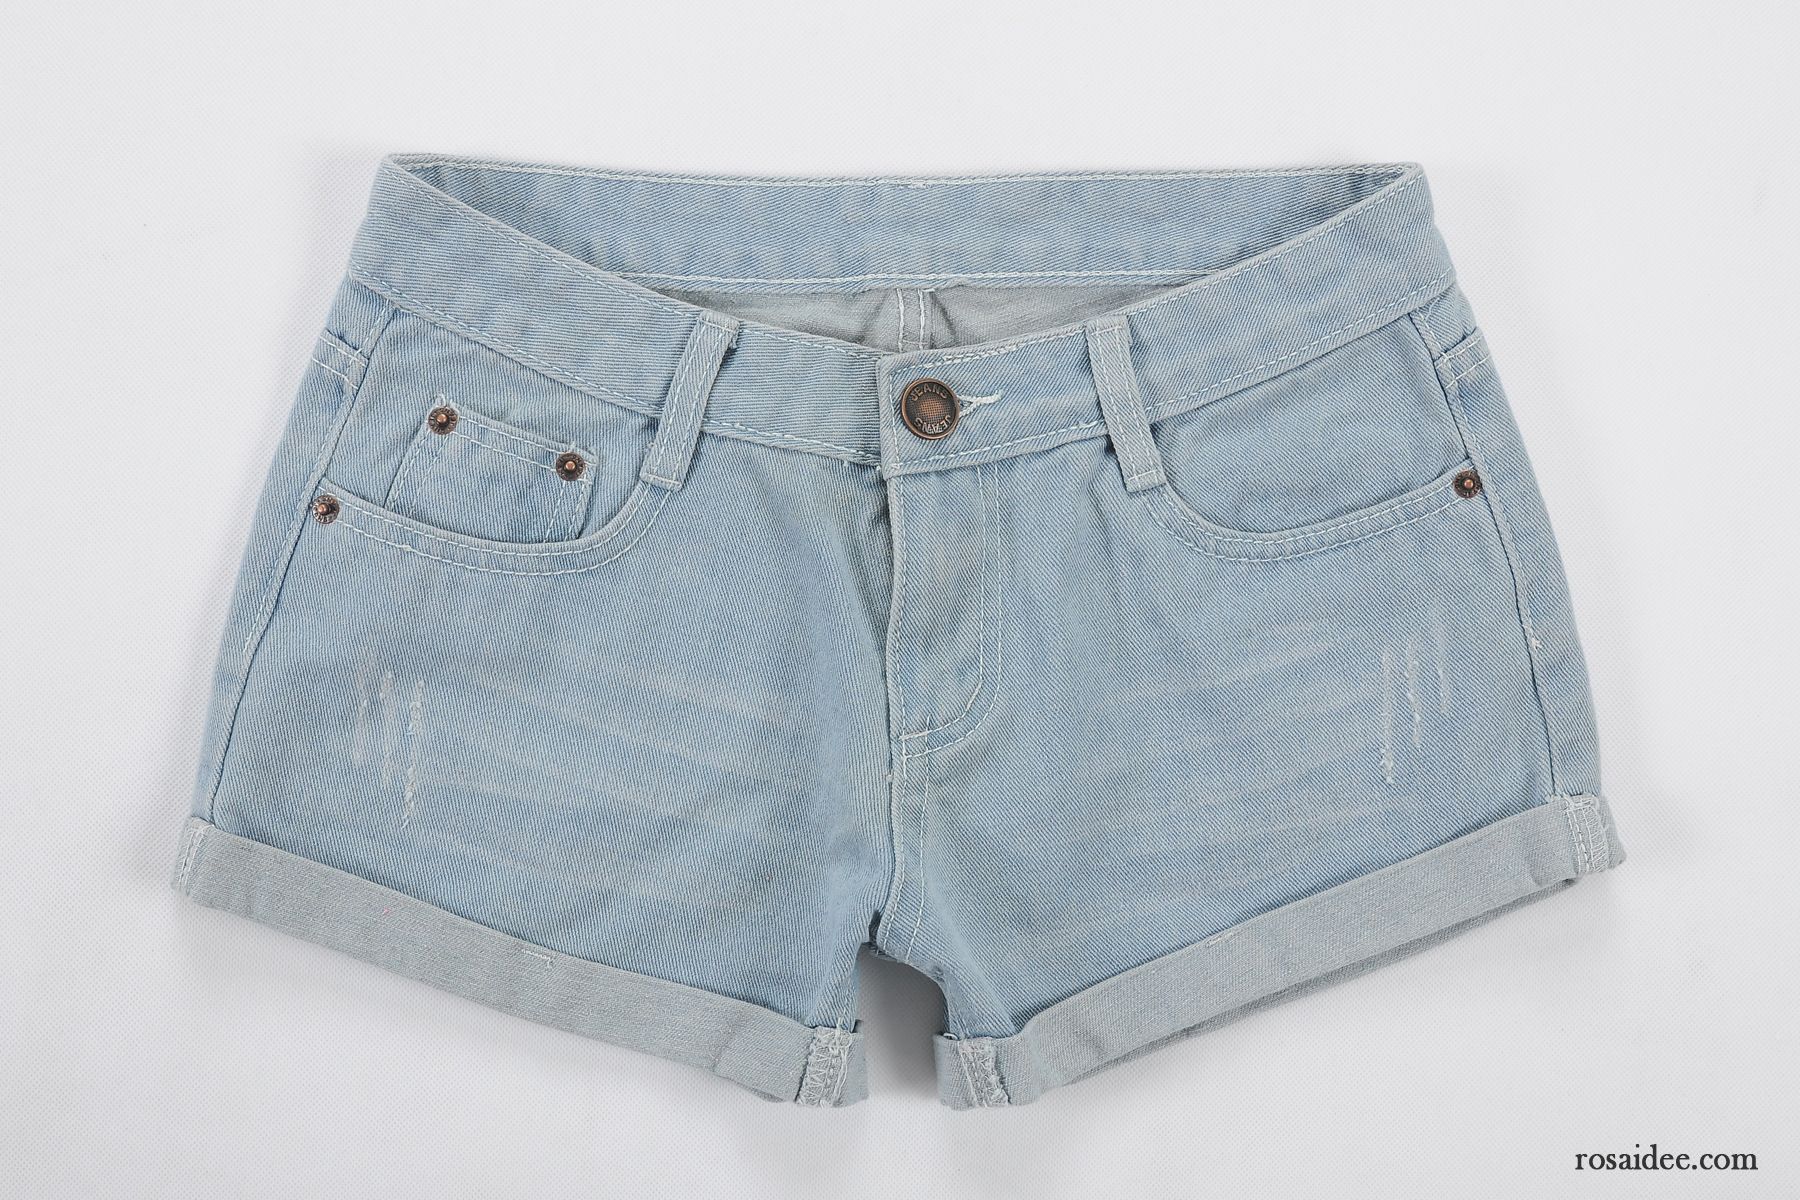 Hellblaue Skinny Jeans Damen Schlank Crimpen Damen Kurze Hose Sommer Neu Jeans Allgleiches Kaufen